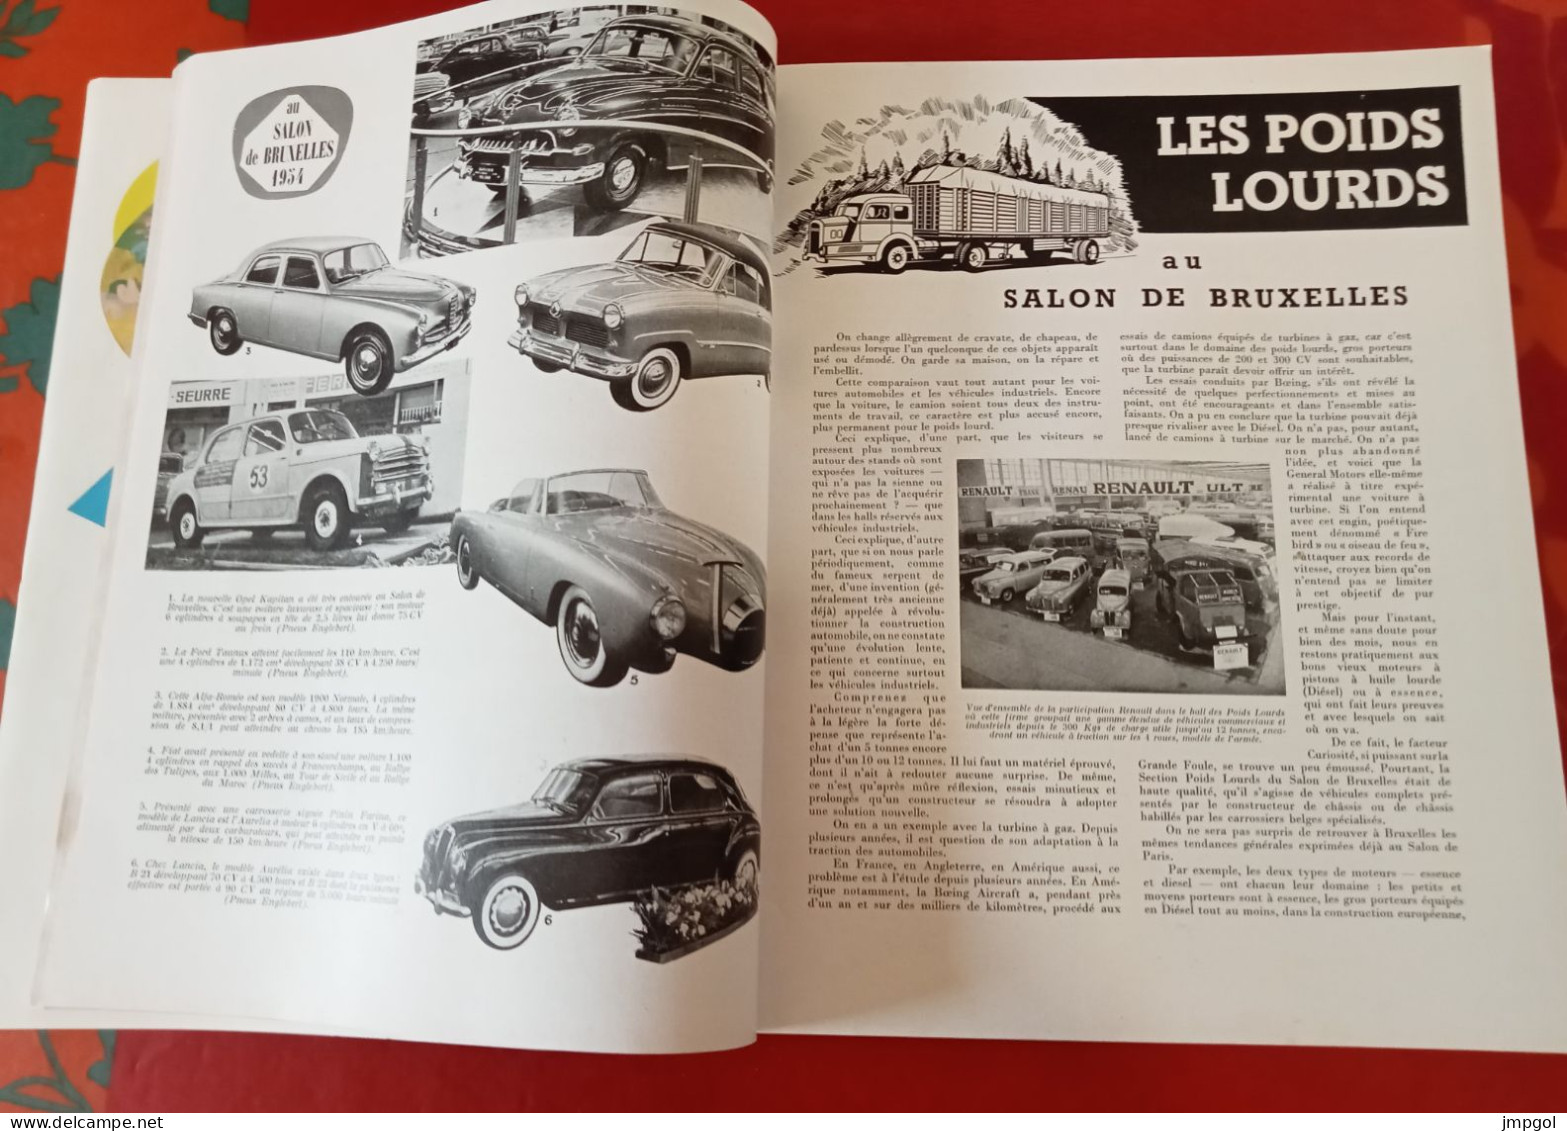 Englebert Magazine n°70 Mars 1954 Salon Bruxelles Vedette Comet Lancia Cabriolet Poids Lourds Autocars Tourisme Savoie